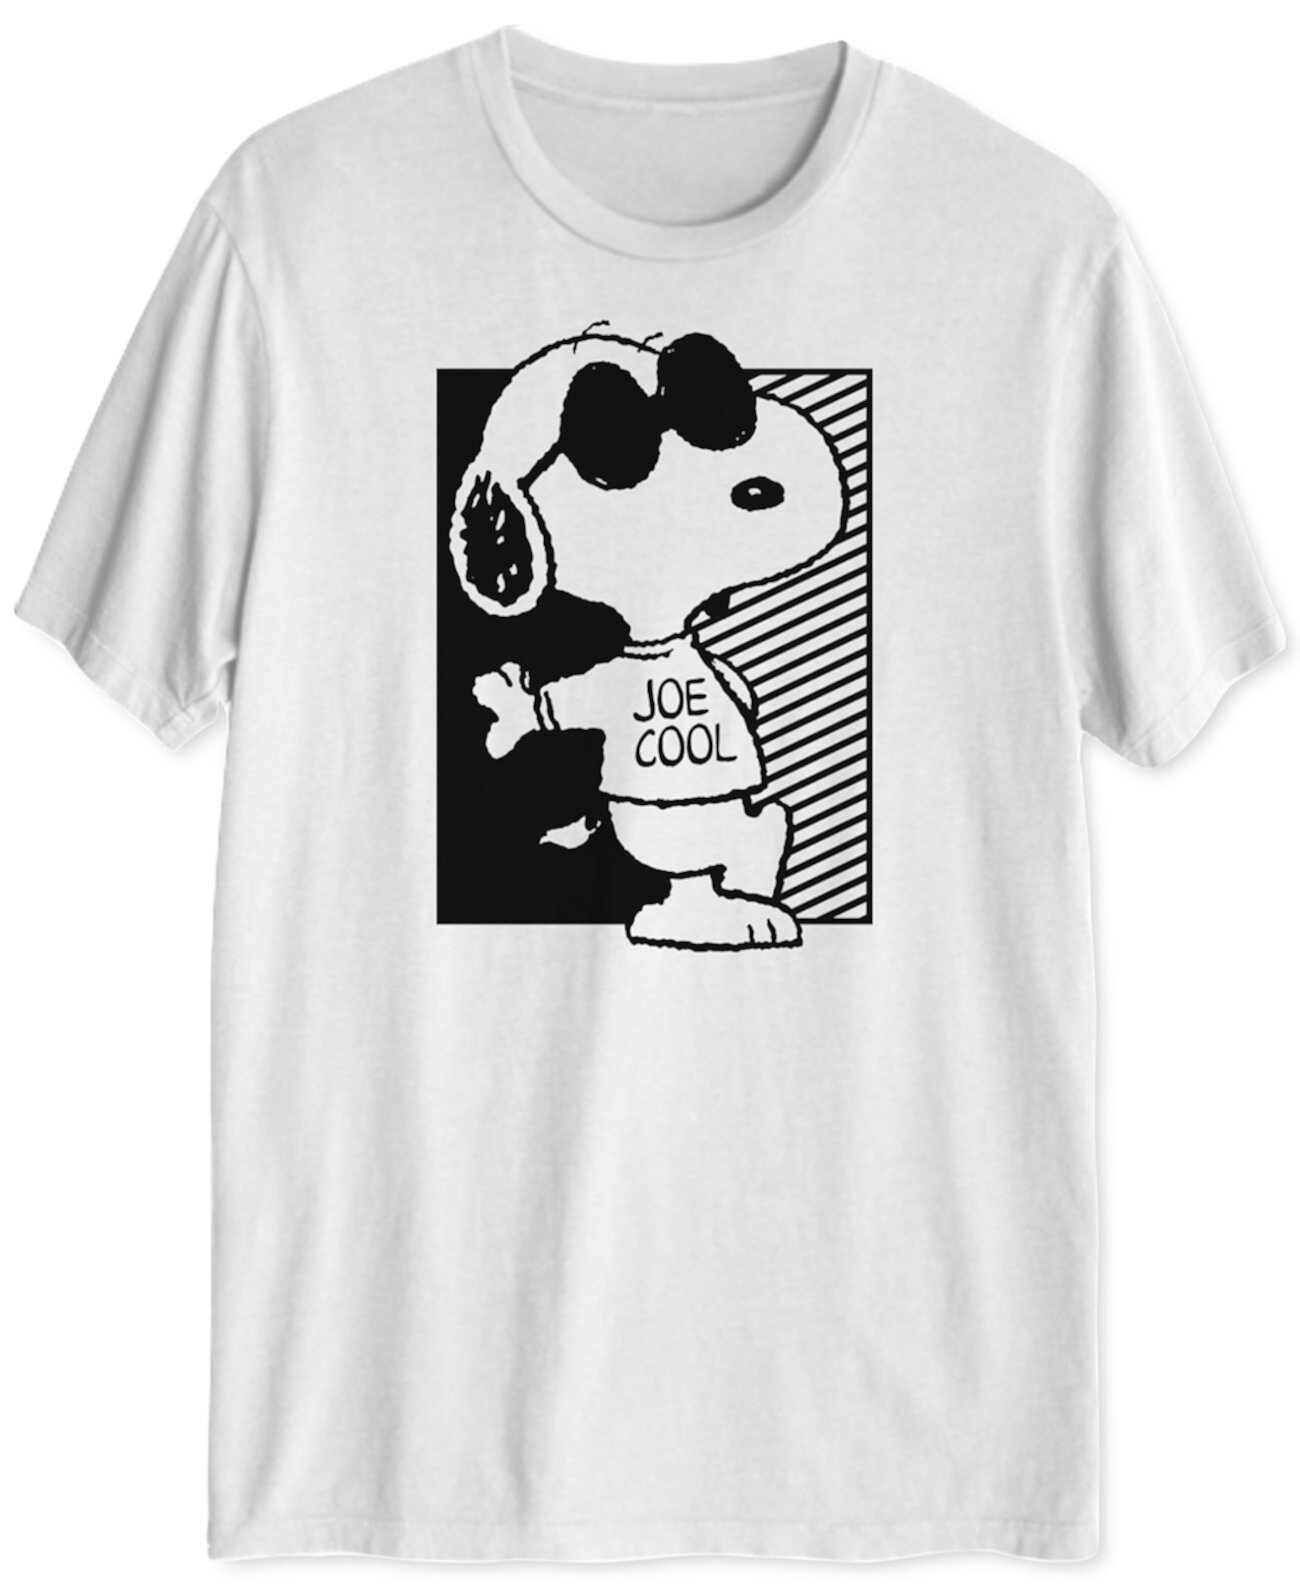 Мужская футболка Snoopy Too Cool Hybrid